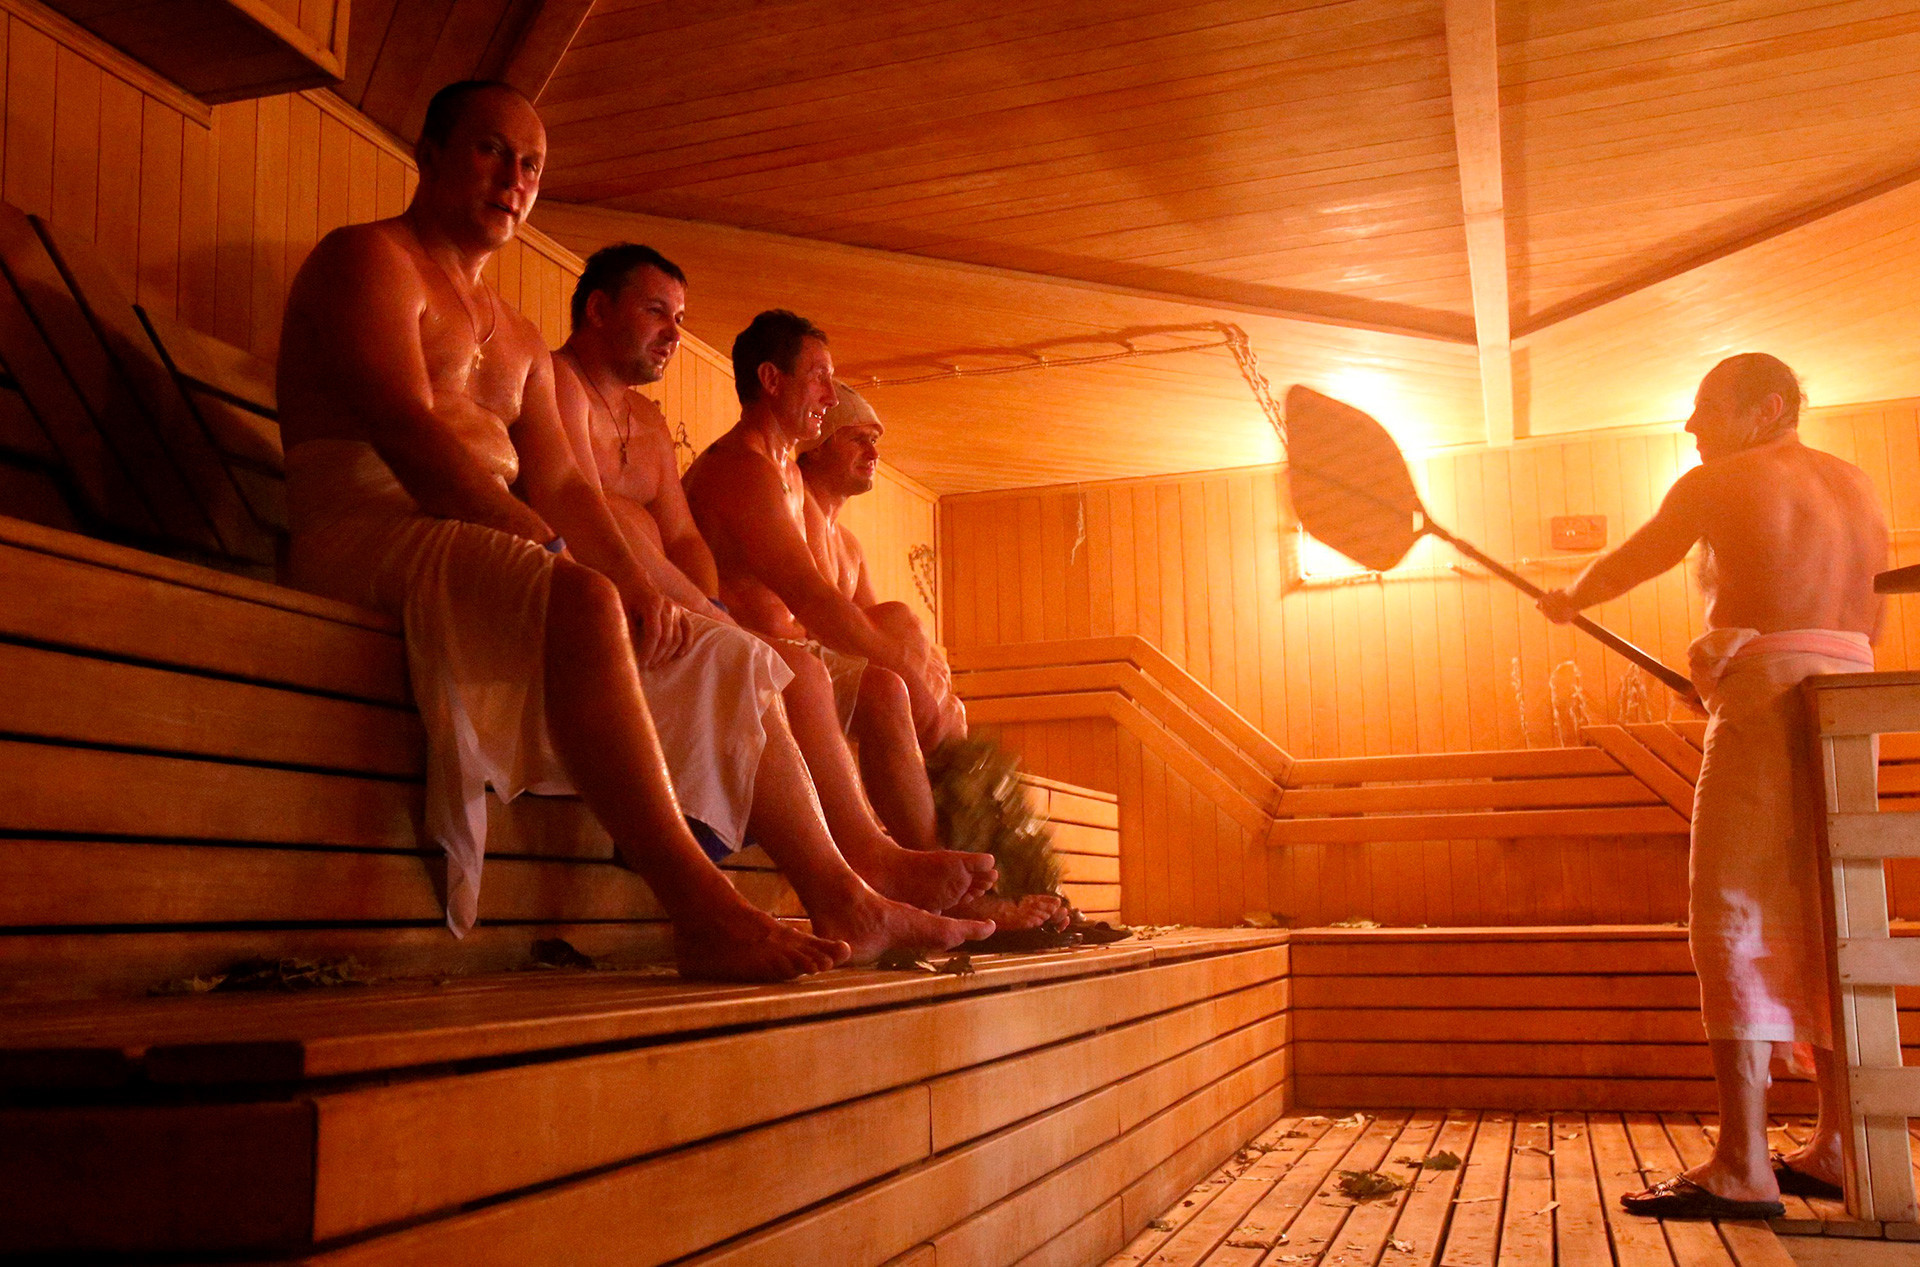 Rubljevskije bani, kompleks sauna u Moskvi